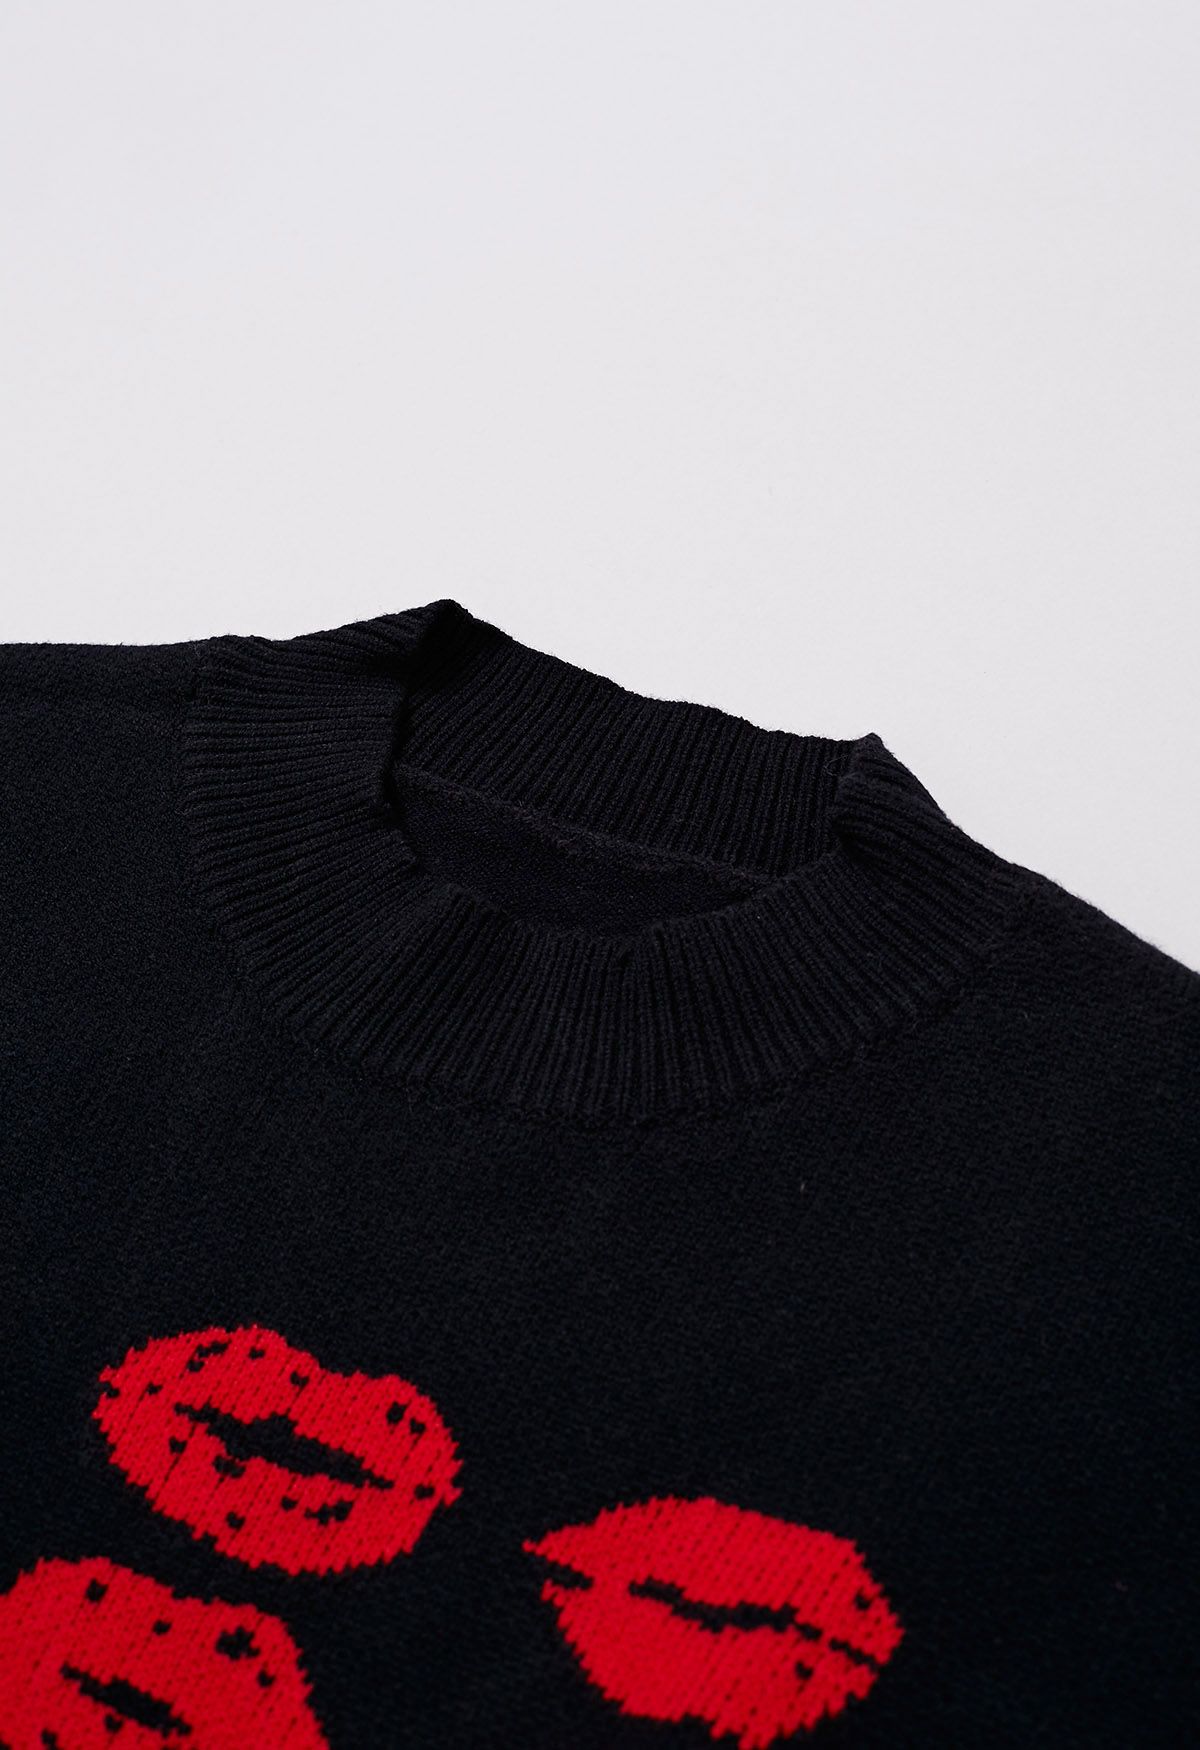 Red Lips Pattern Knit Sweater in Black